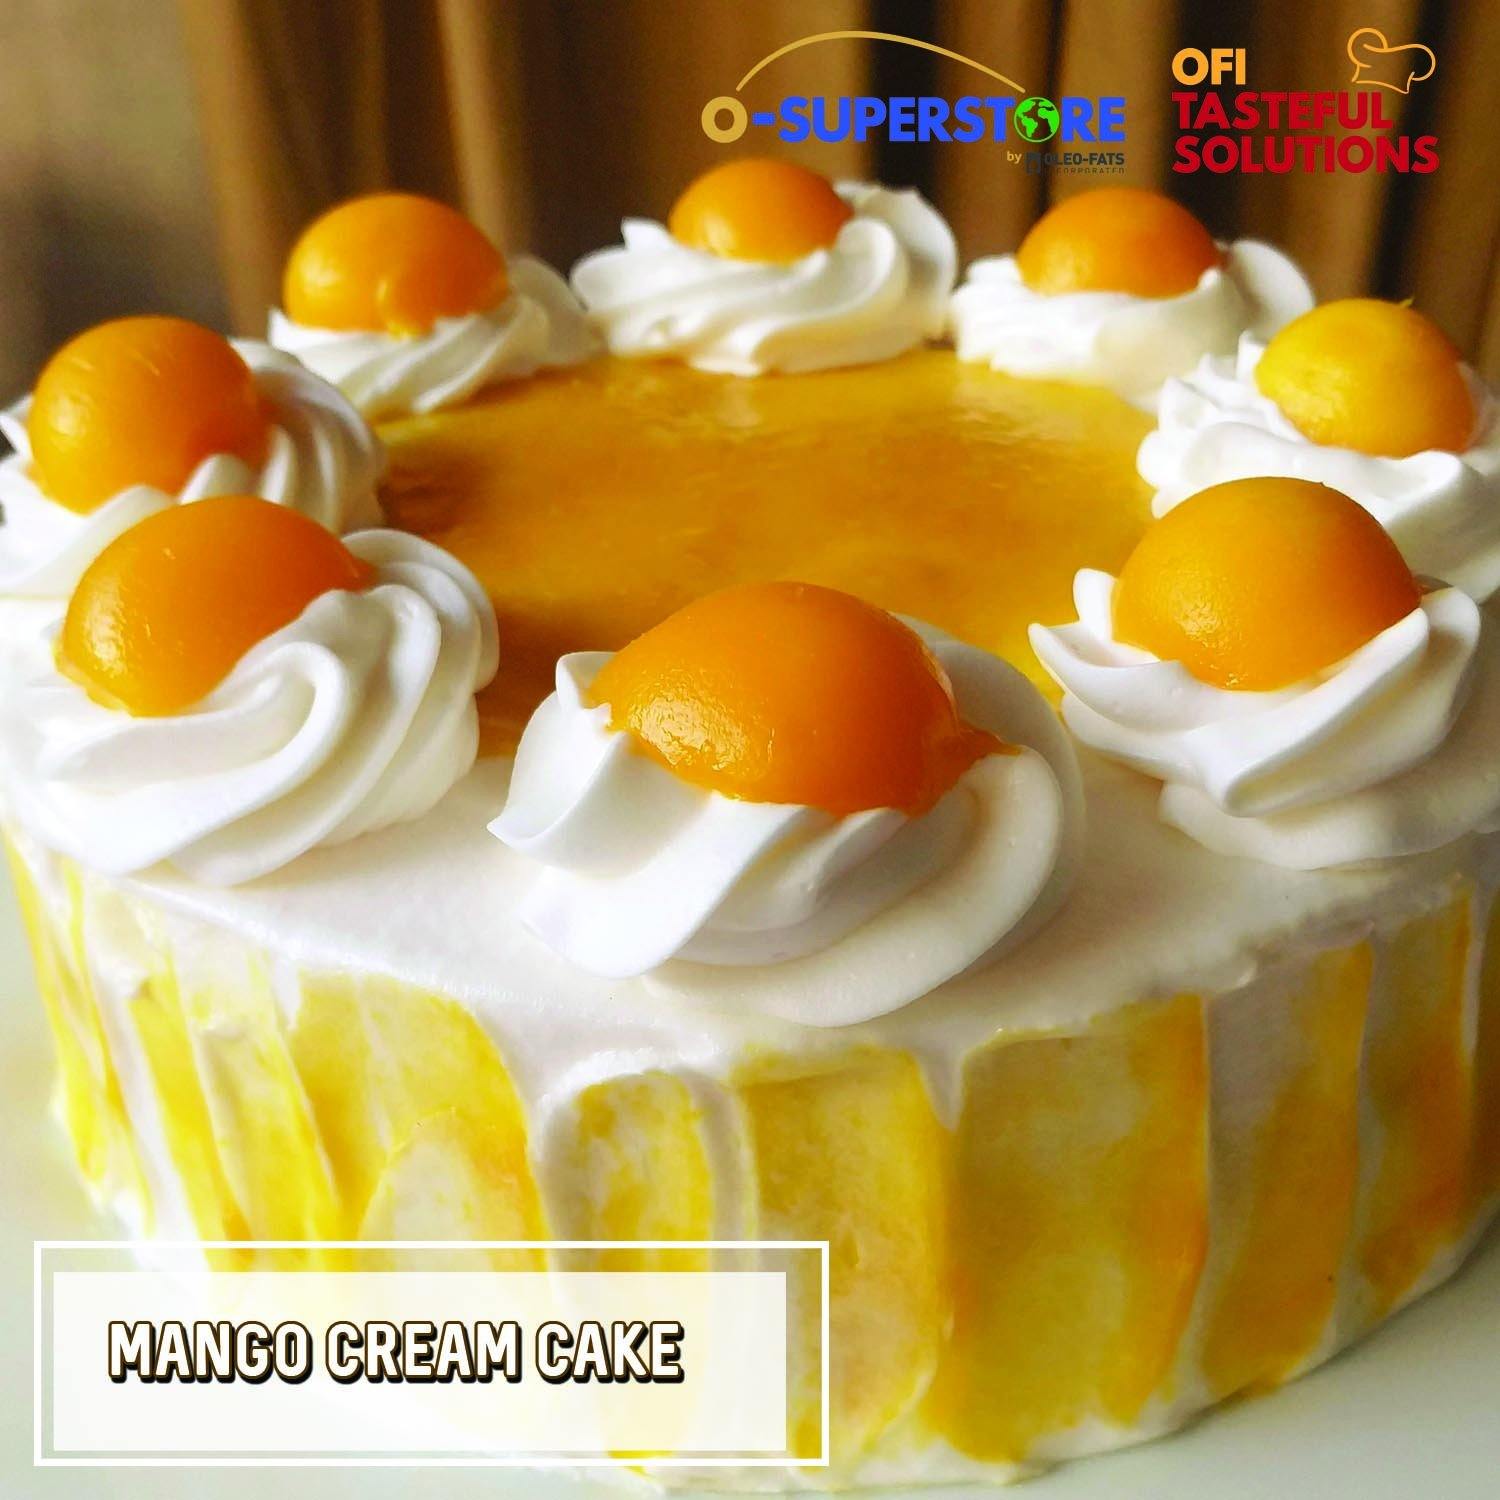 Mango Cream Cake - O-SUPERSTORE